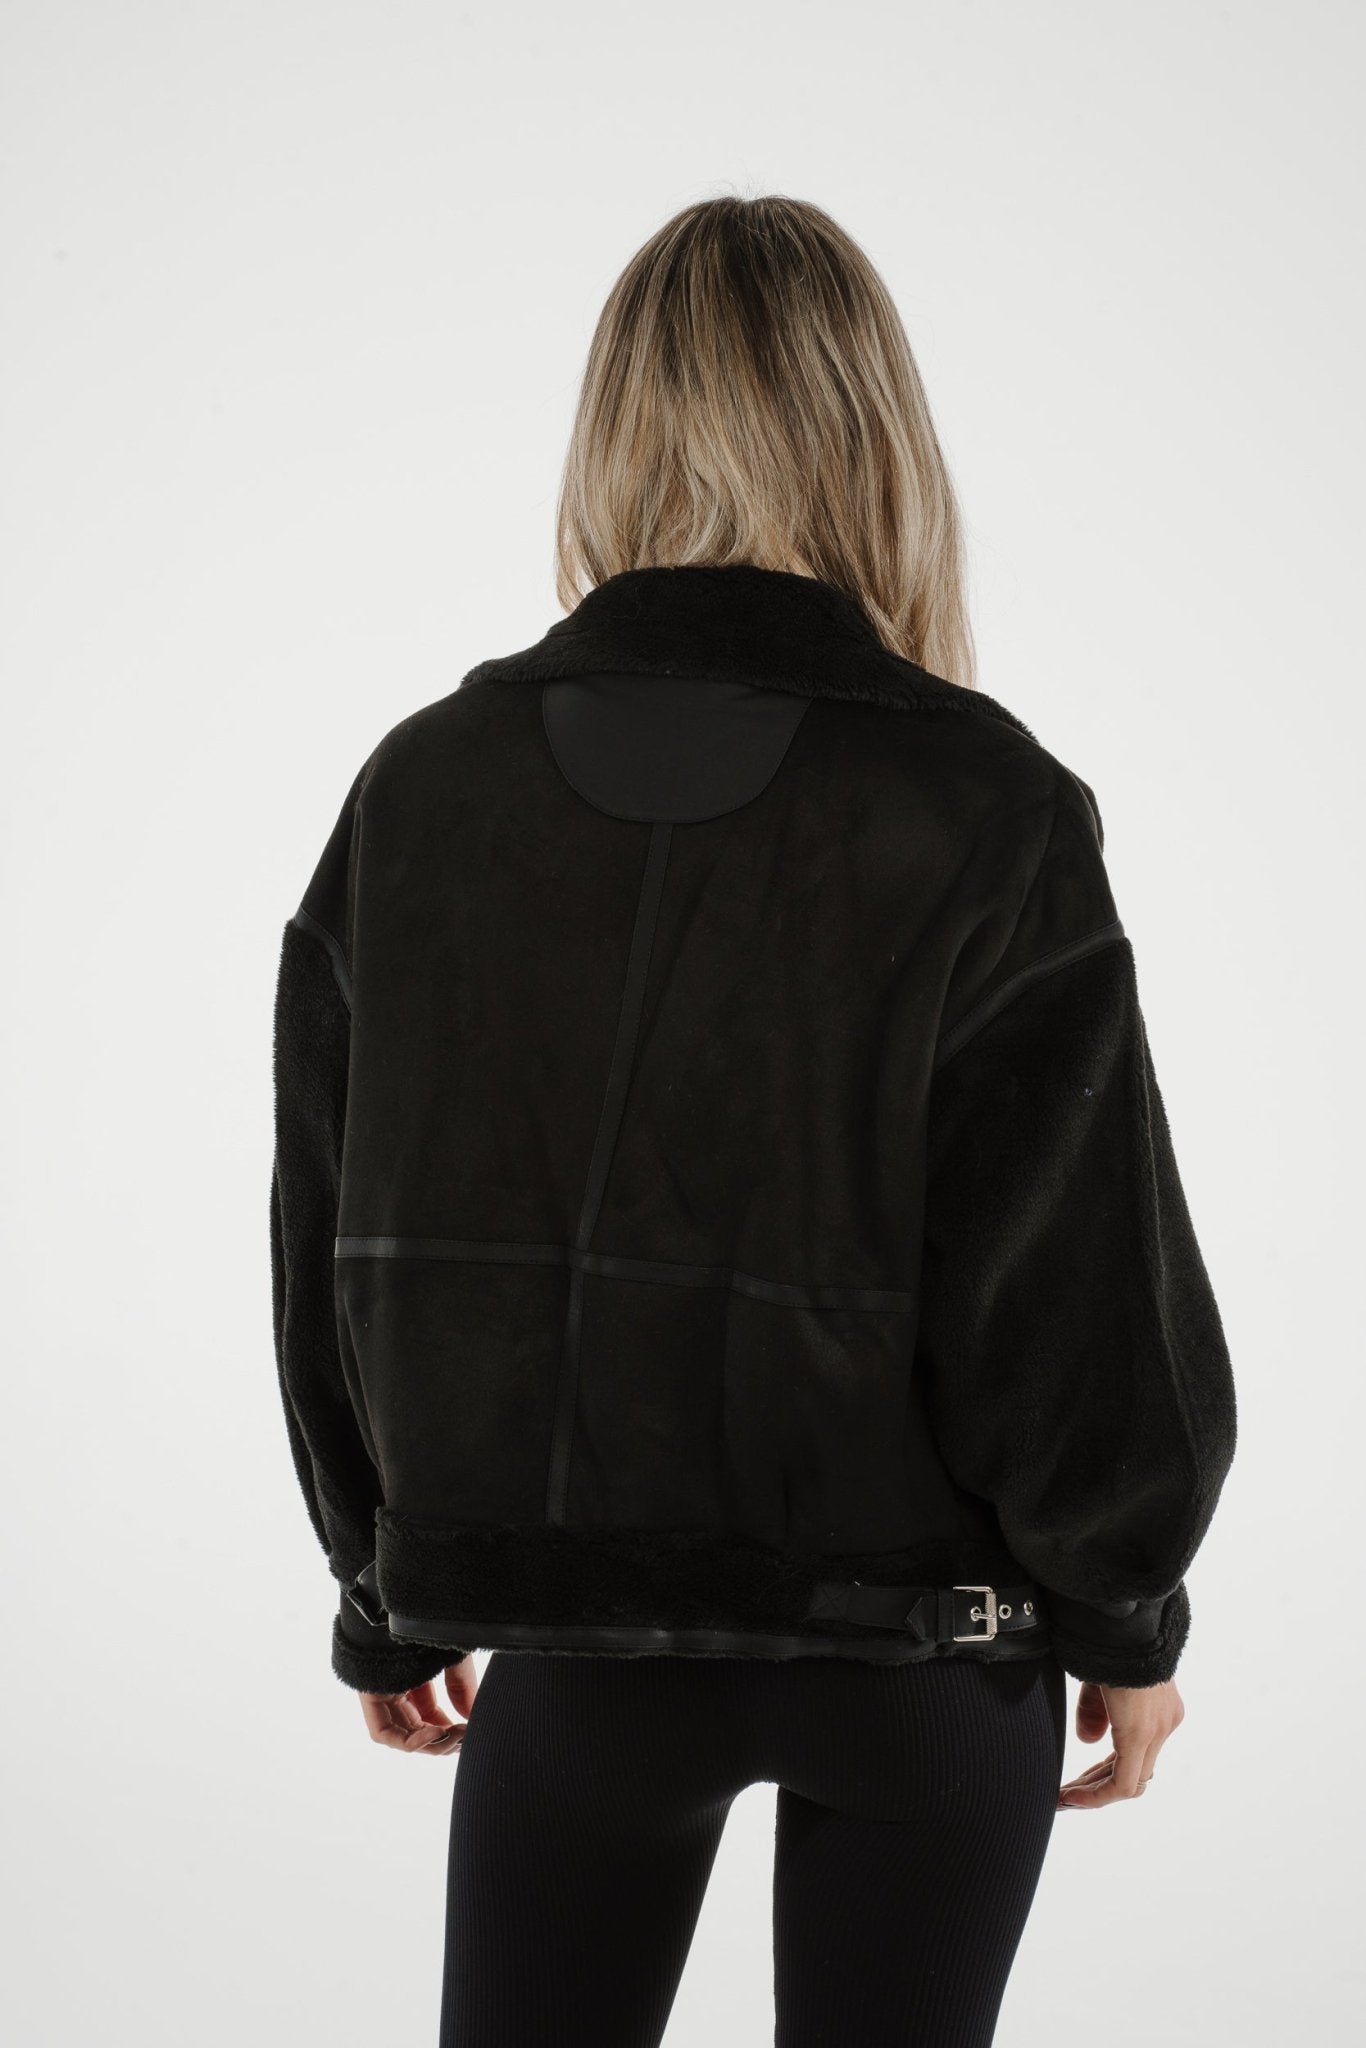 Lottie Aviator Jacket In Black - The Walk in Wardrobe